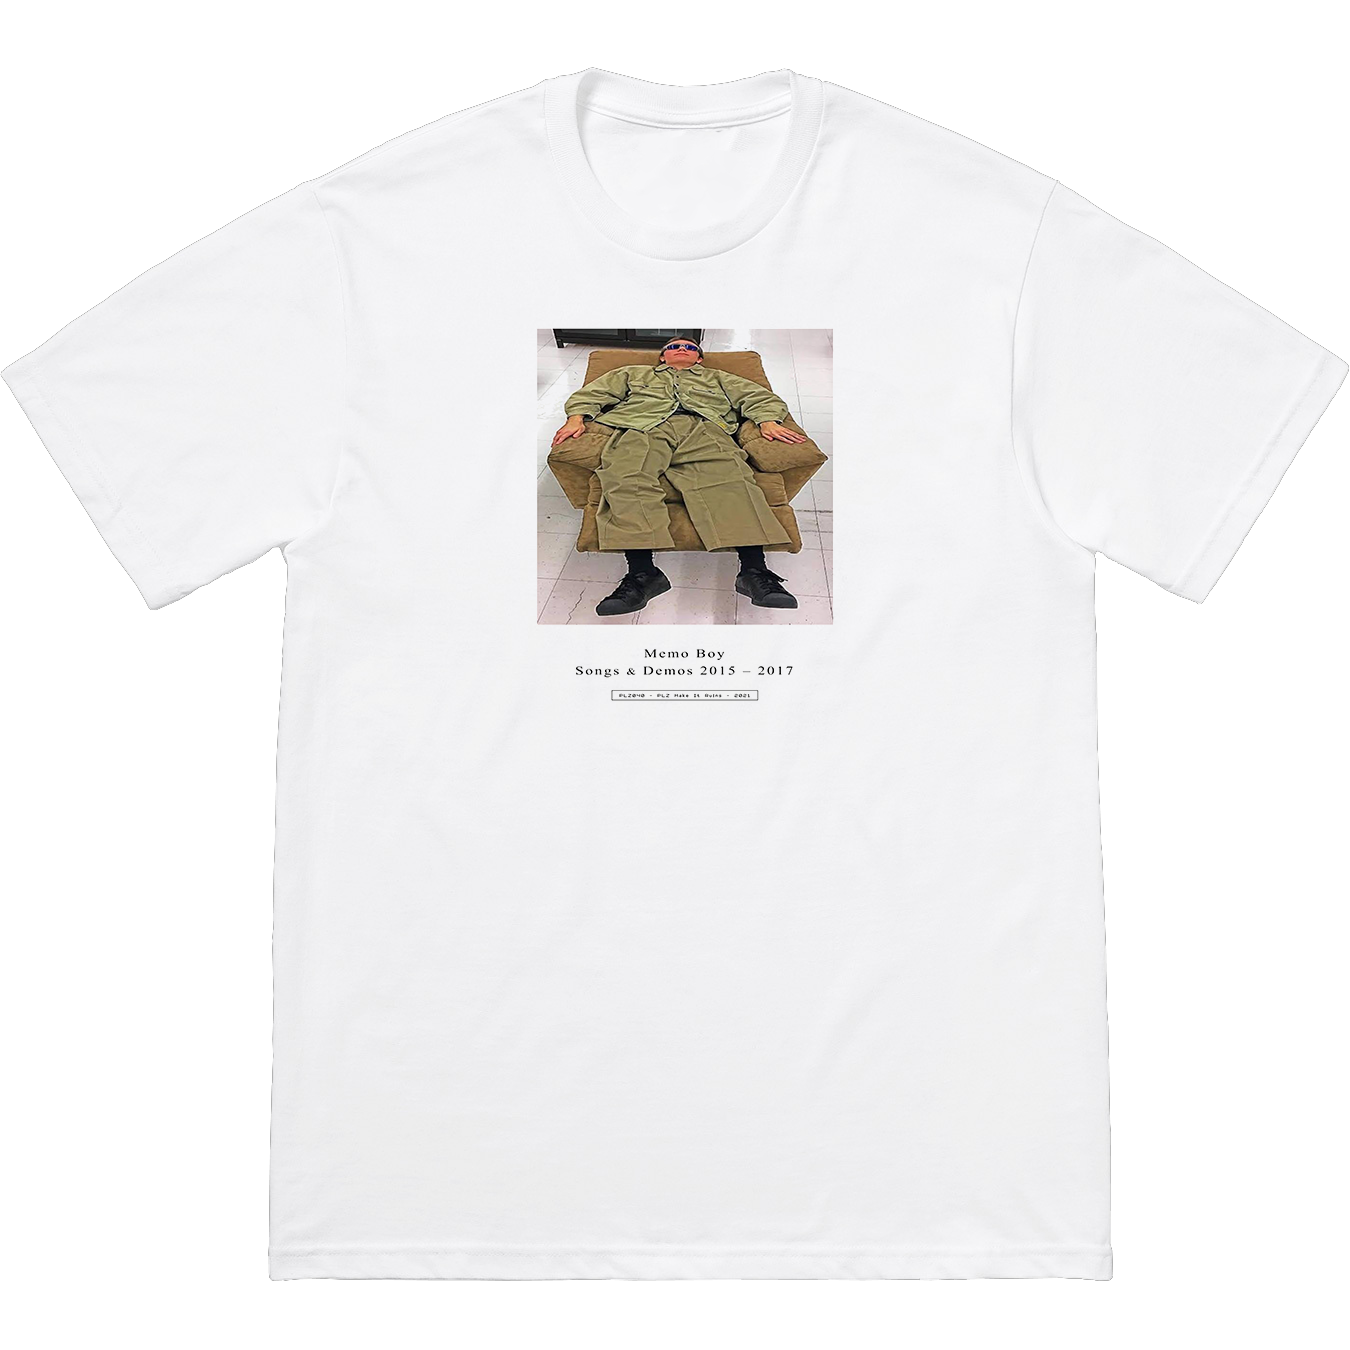 Memo Boy - Recliner T-Shirt